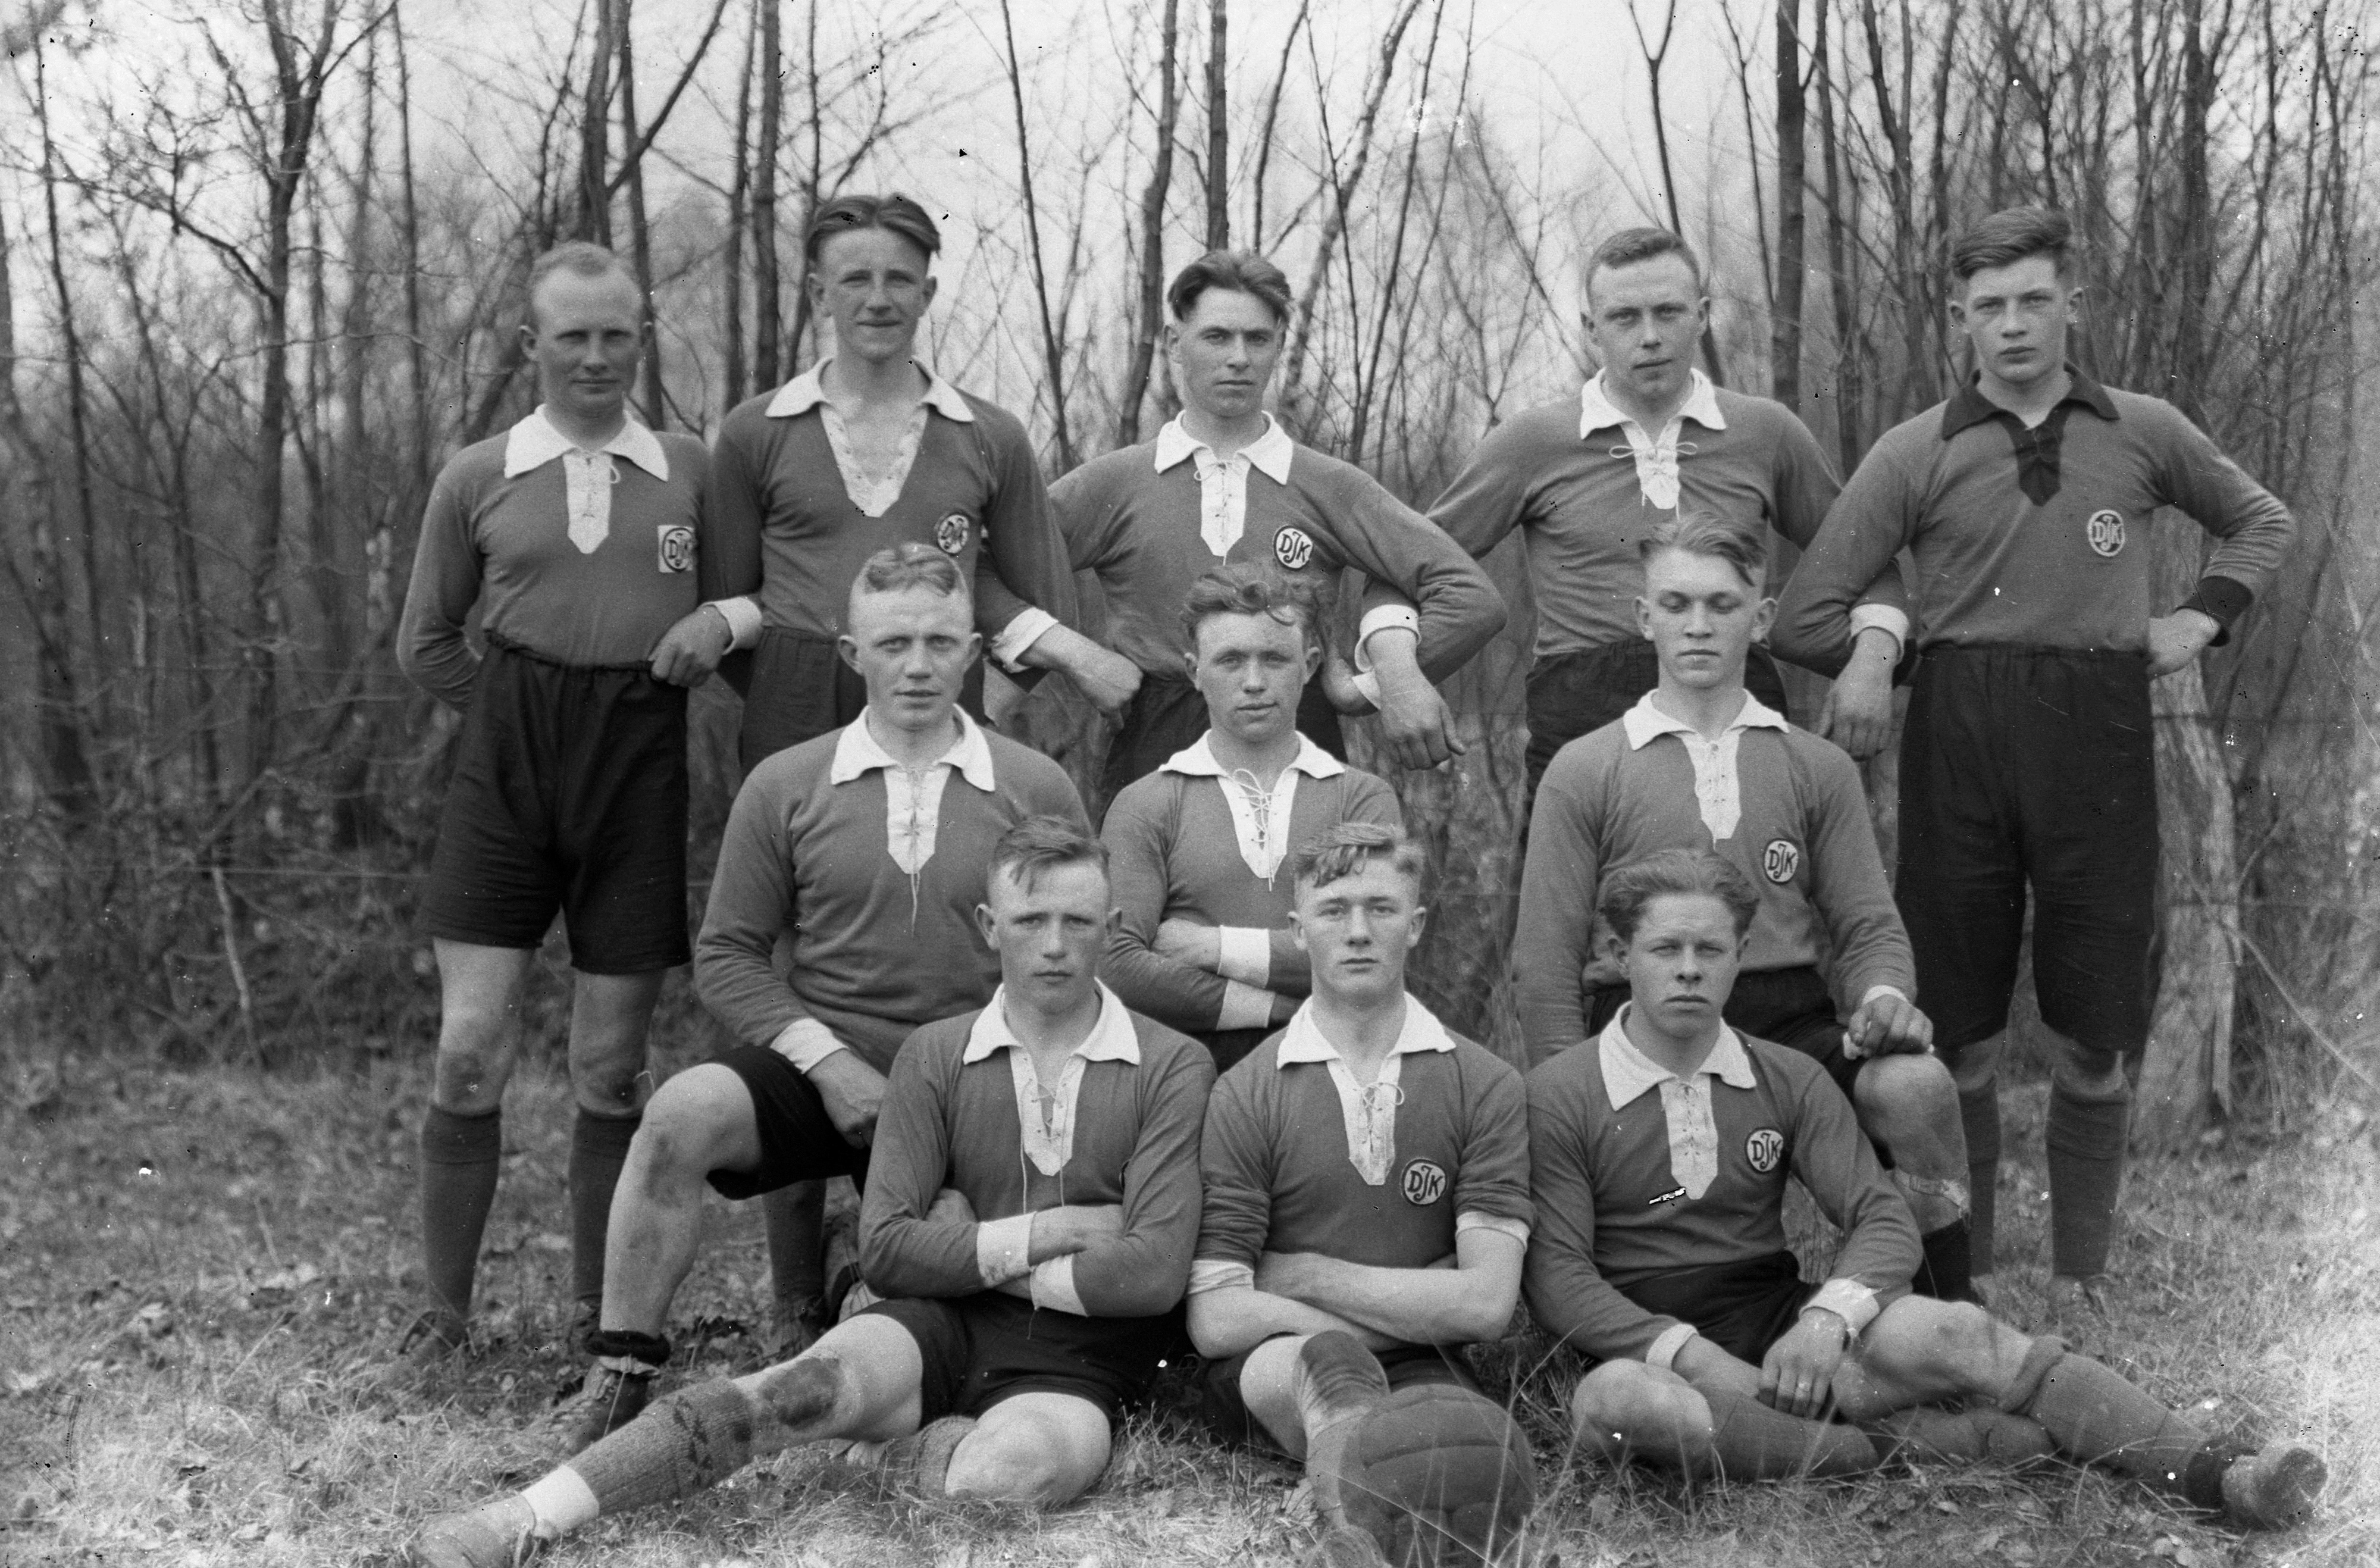 Elf Männer nach Spielende: Diese Fußballmannschaft hat Clemens Bokern um 1930 fotografiert. Gesucht werden die Namen und die Herkunft. Foto: Heimatverein Bakum/Sammlung Bokern